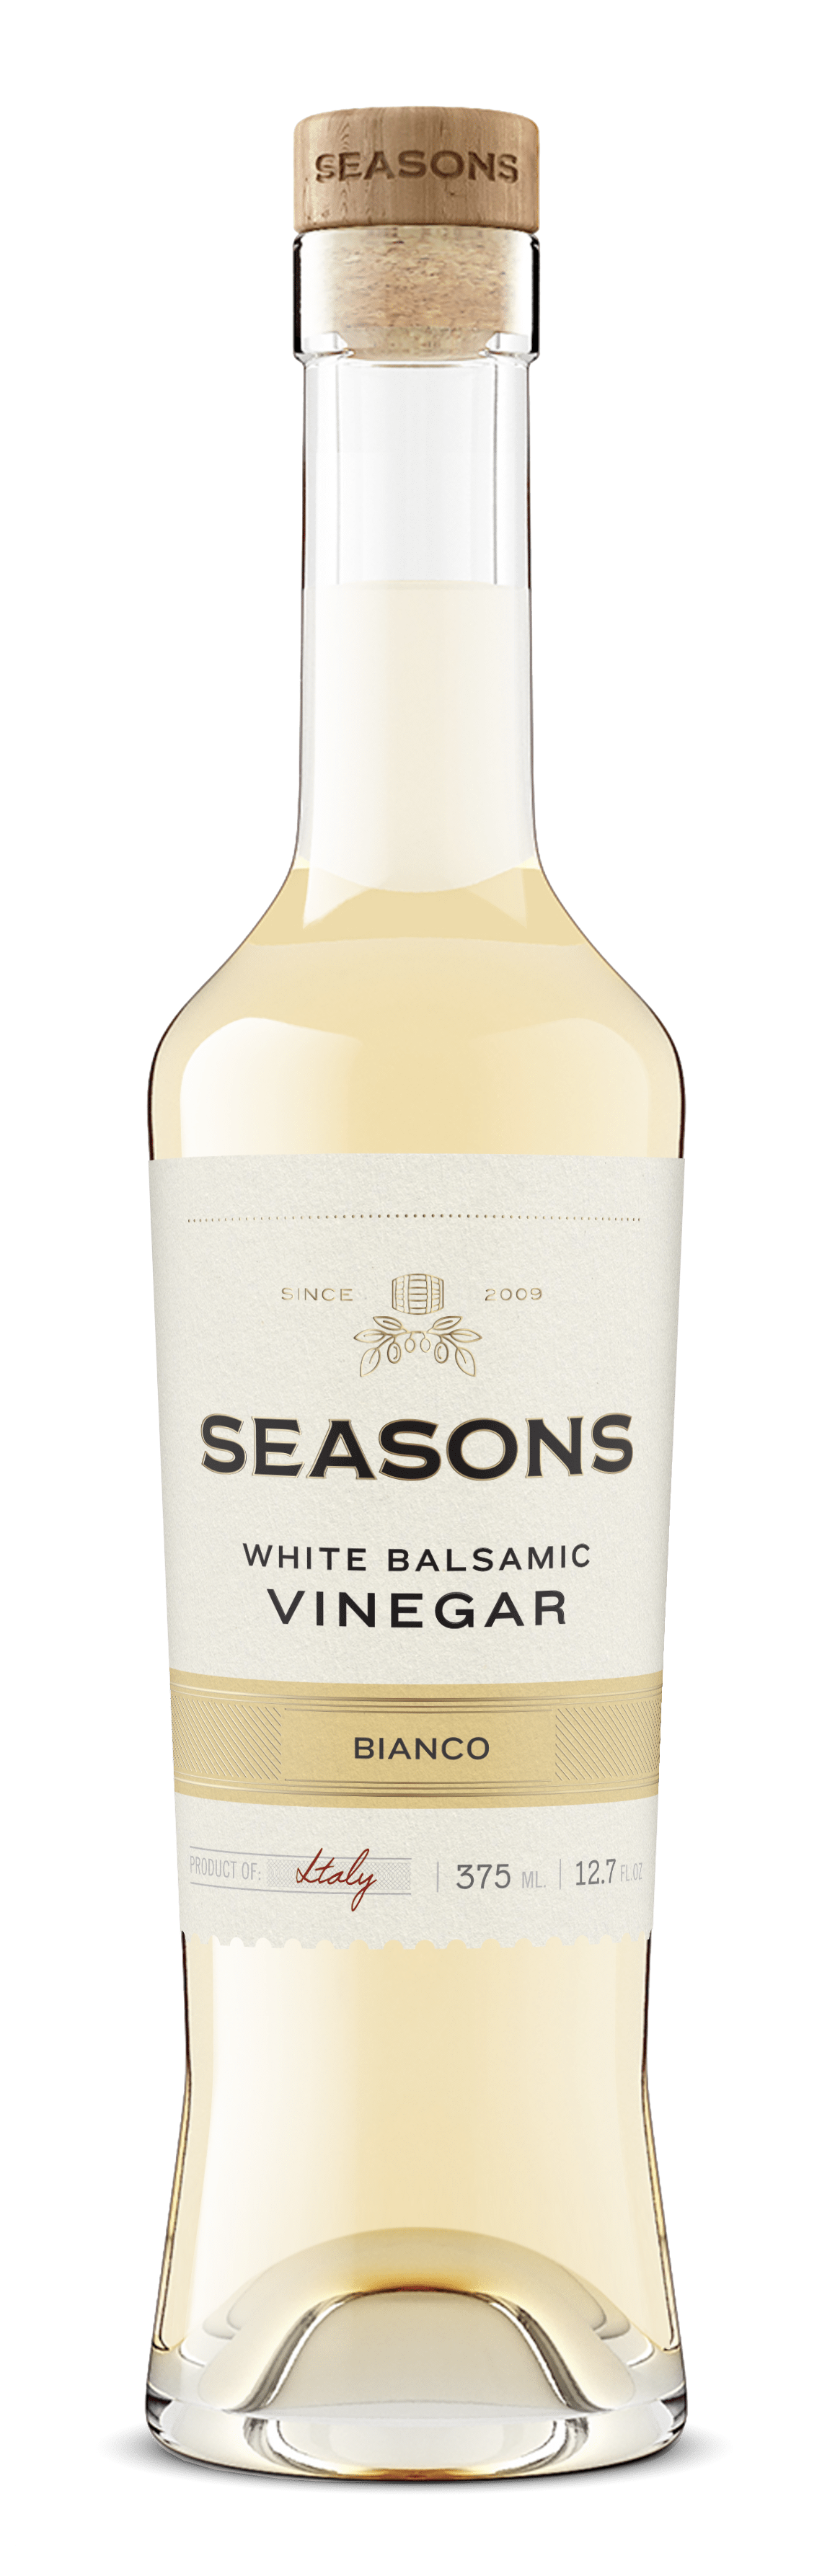 Bianco Premium White Balsamic Vinegar